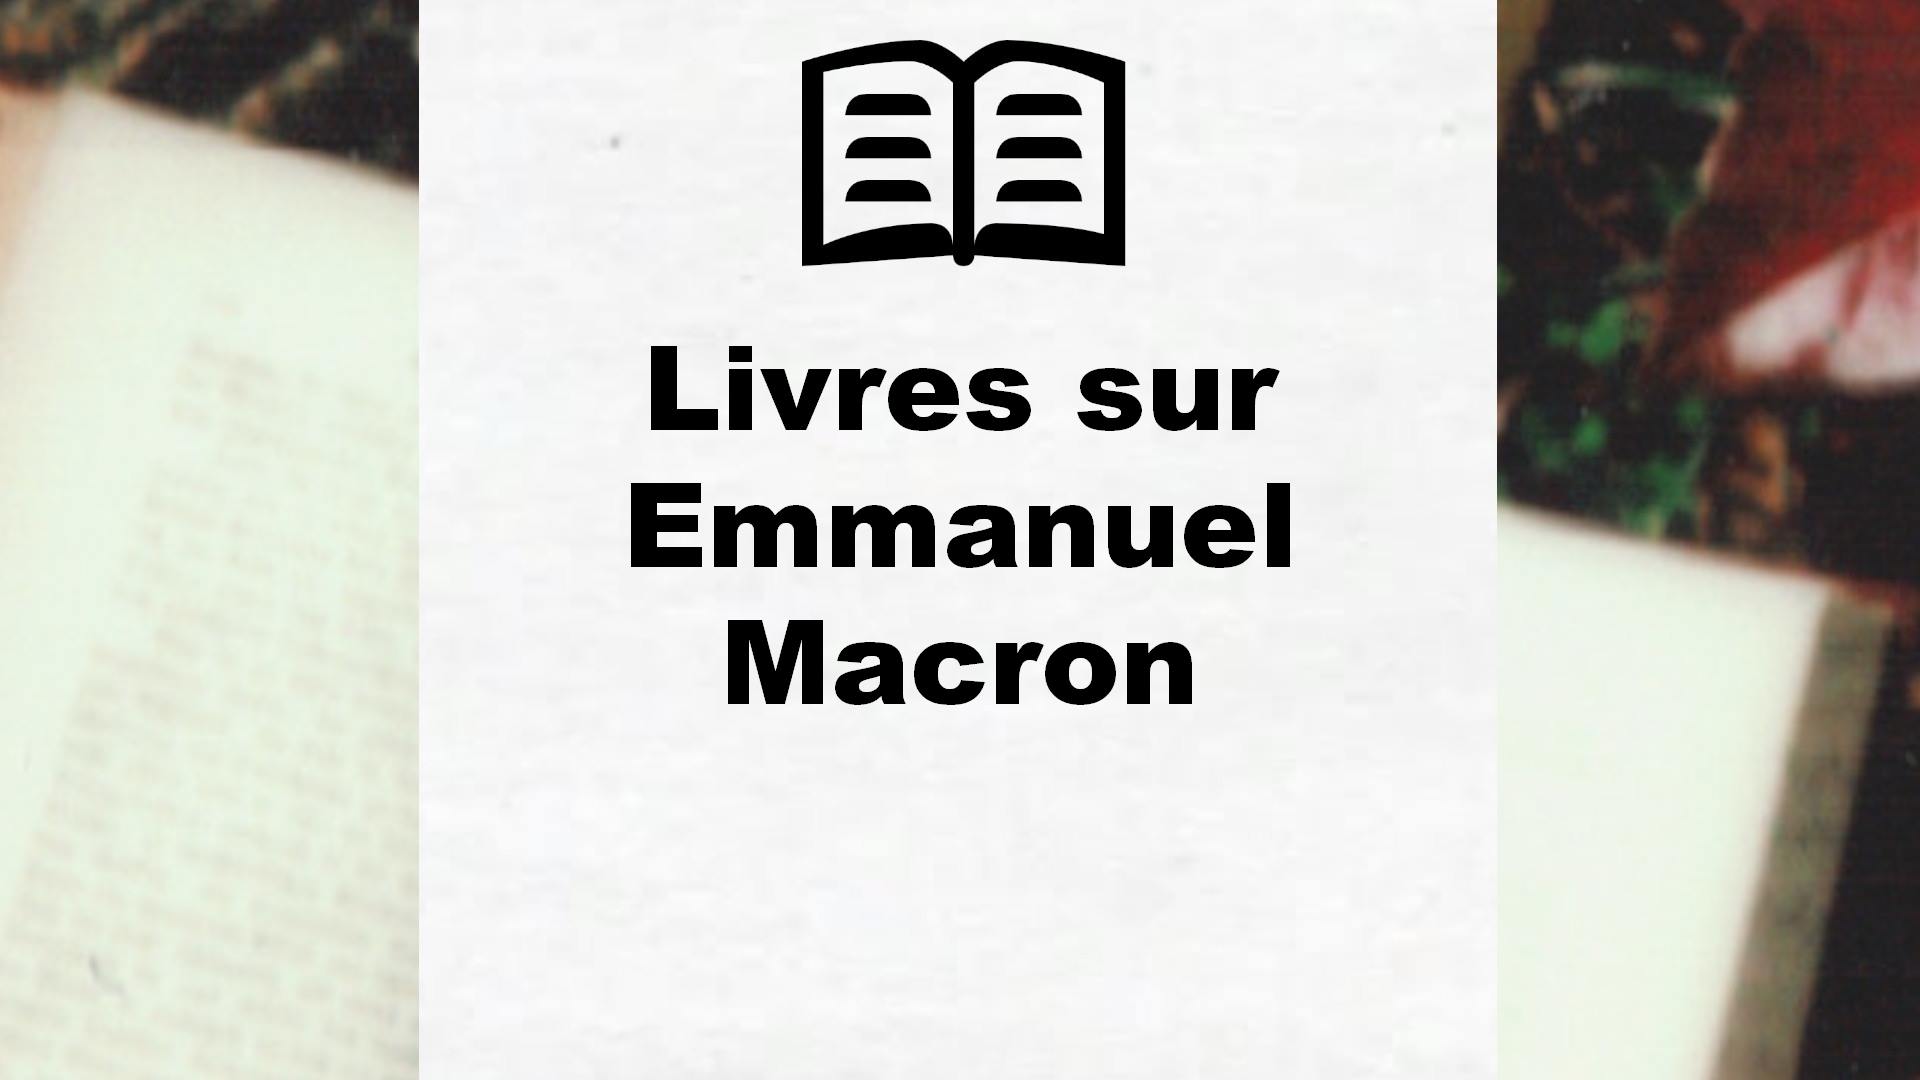 Livres sur Emmanuel Macron